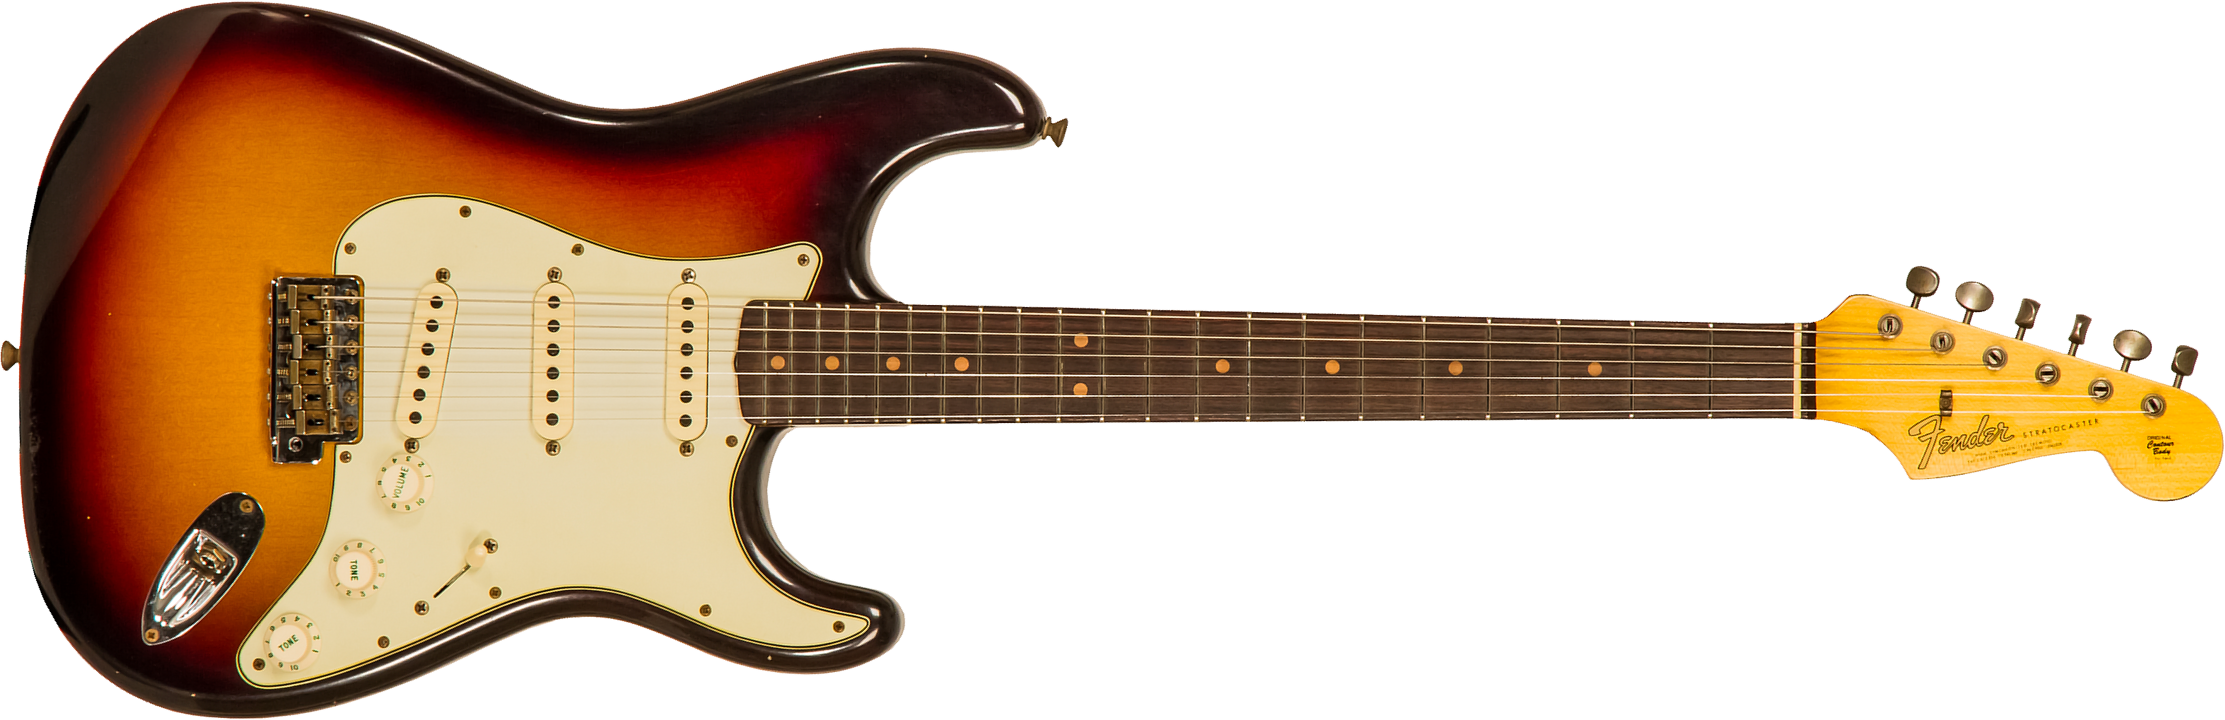 Fender Custom Shop Strat 1964 3s Trem Rw - Journeyman Relic Target 3-color Sunburst - Guitarra eléctrica con forma de str. - Main picture